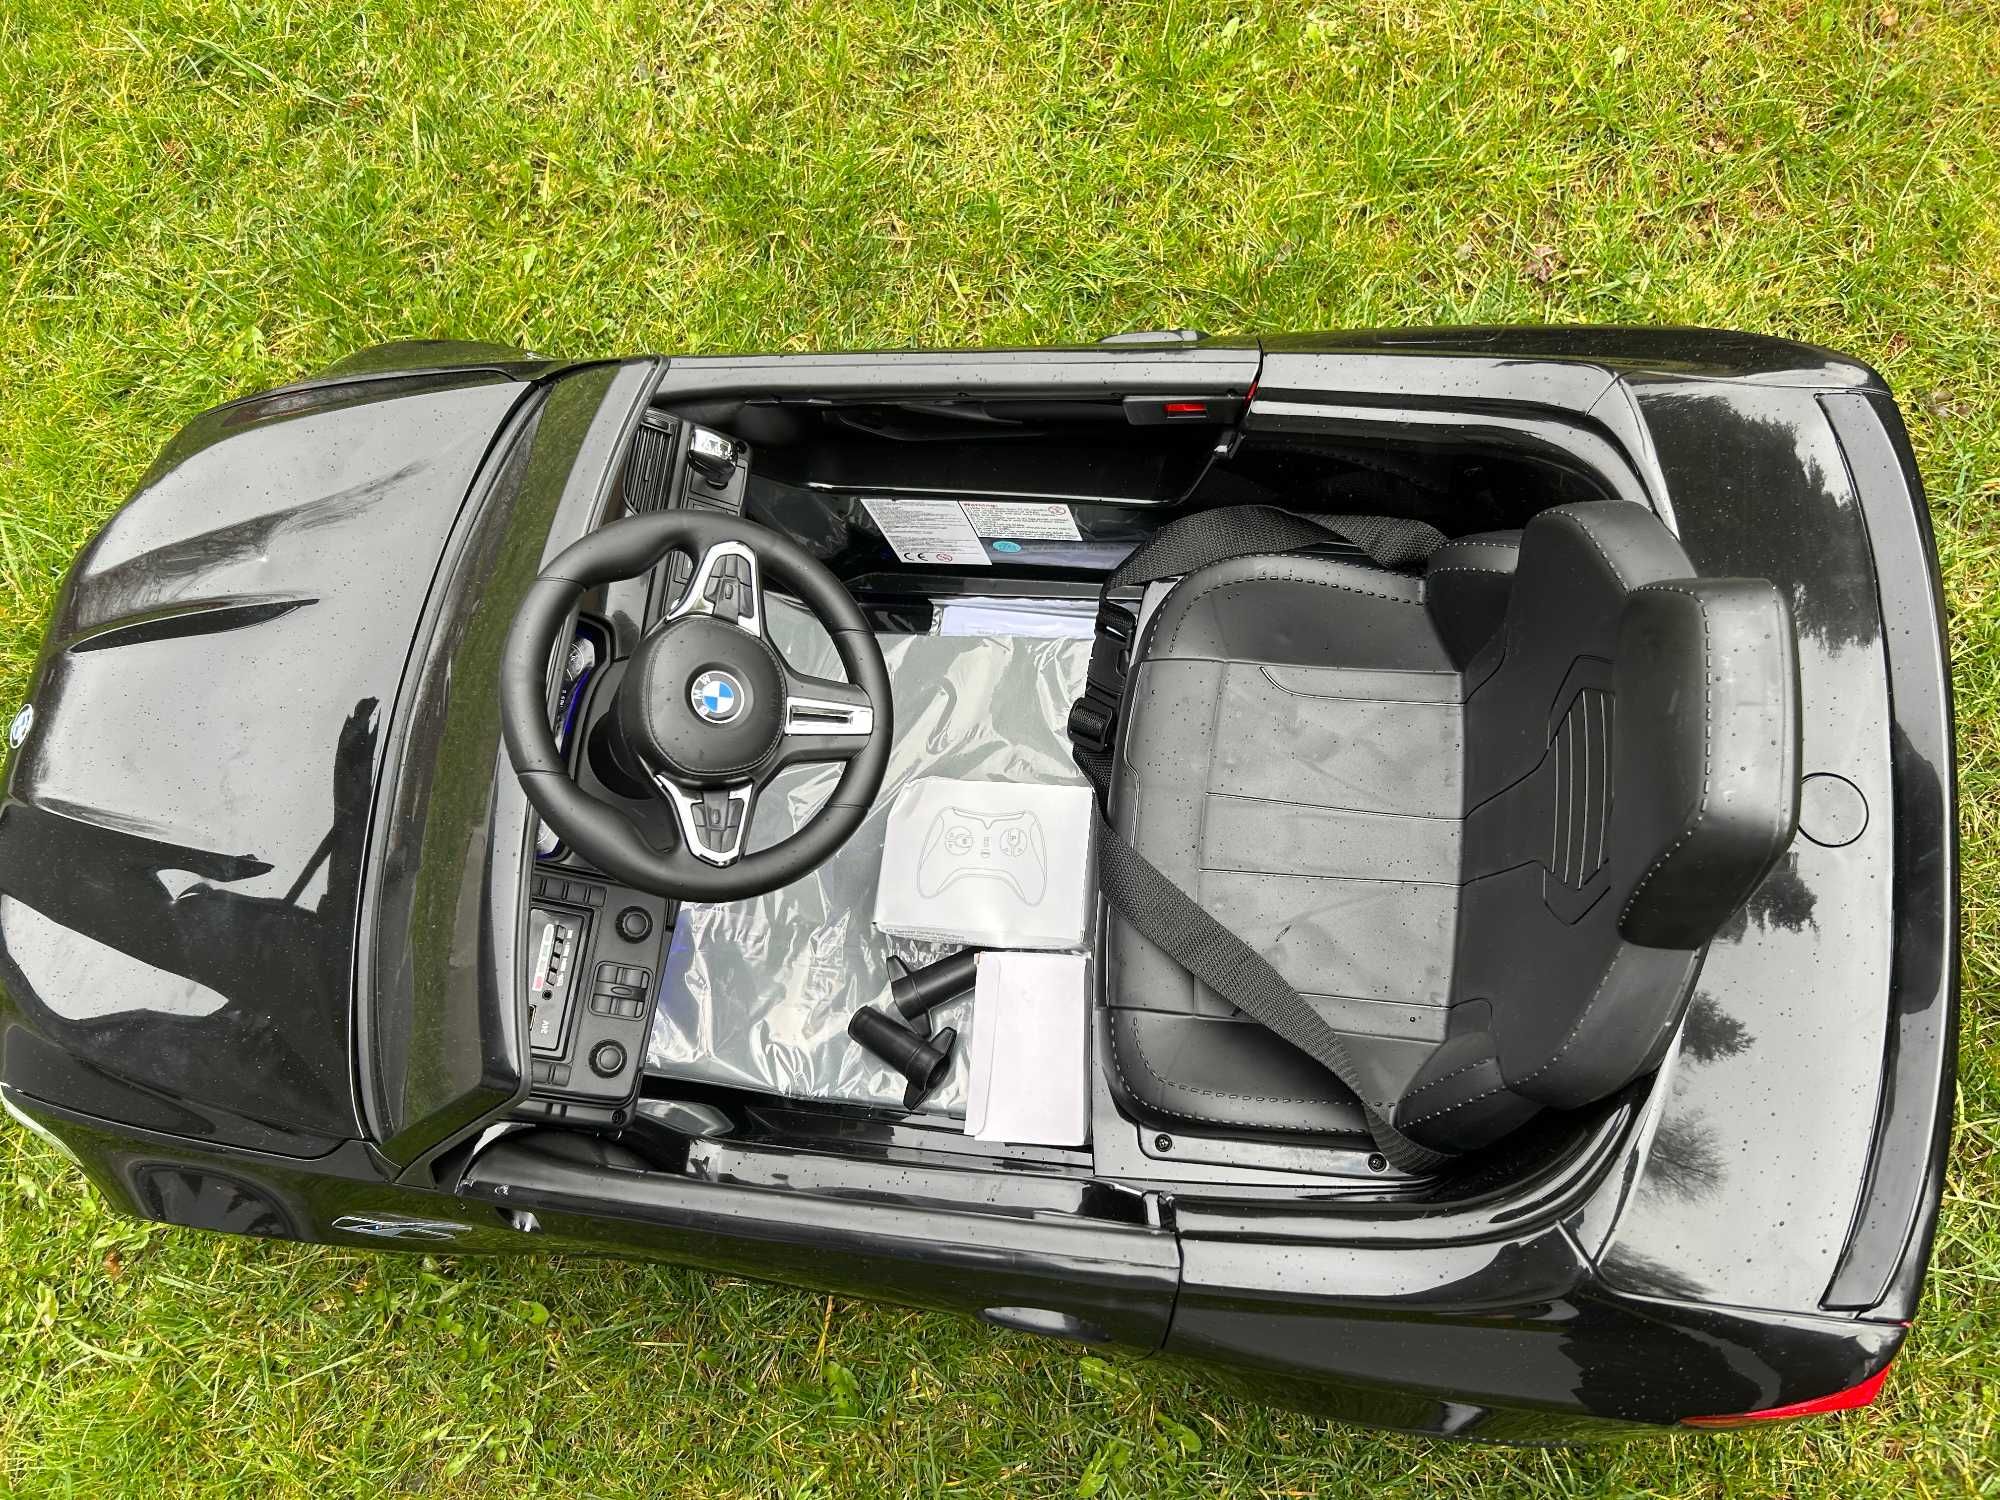 Auto samochód Pojazd BMW M5 DRIFT na akumulator dla dzieci